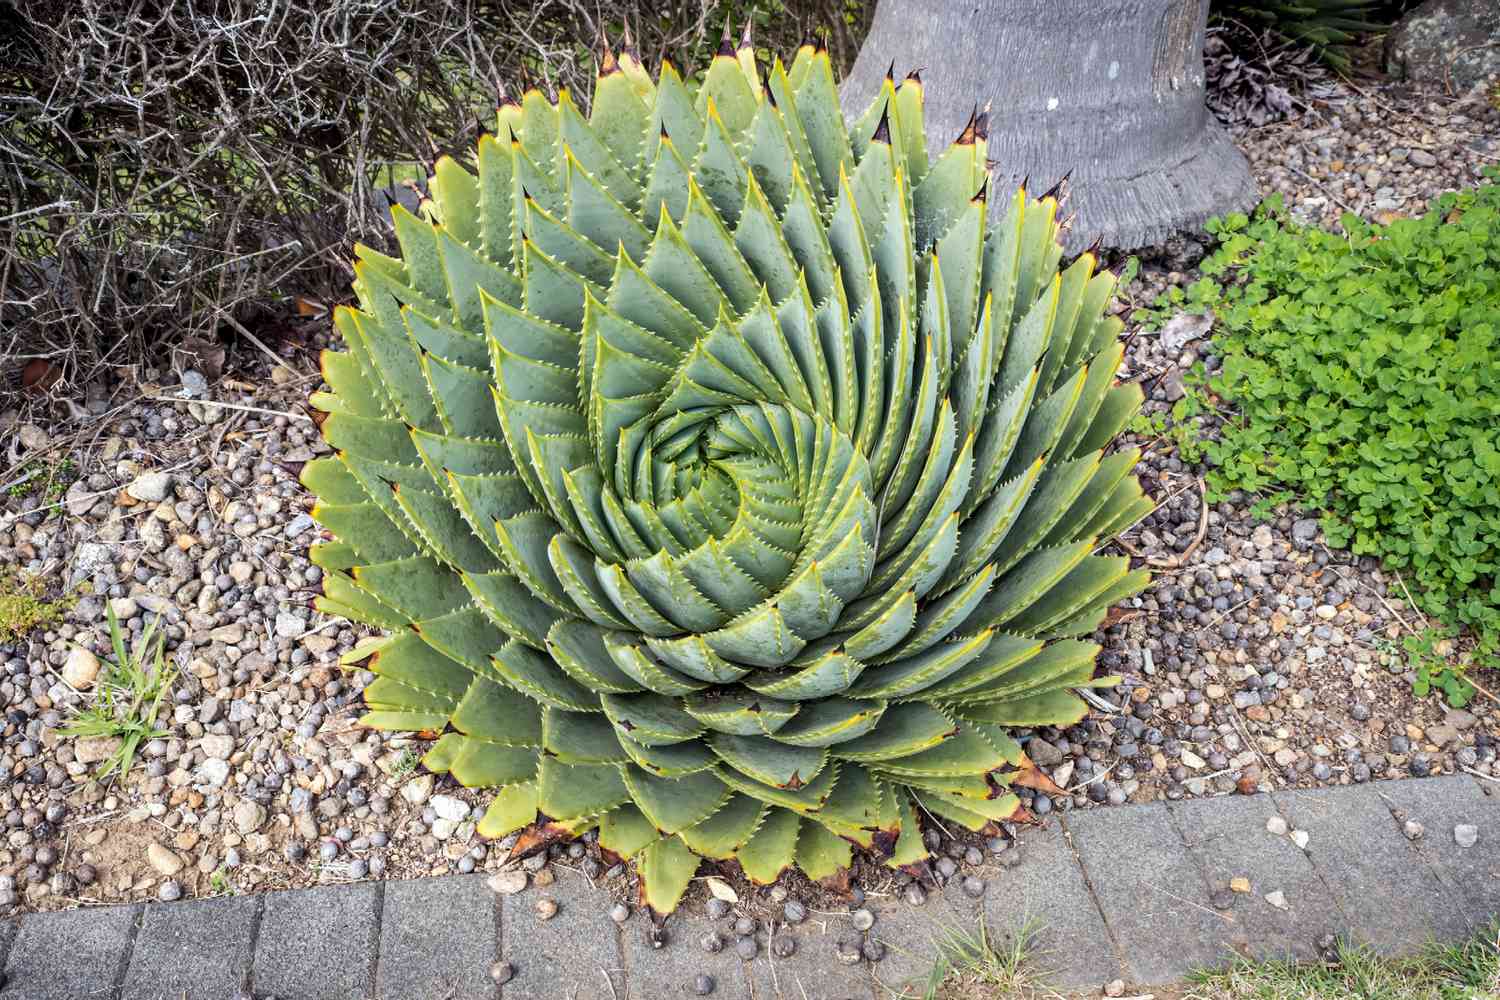 Spirale Aloe Vera-Sukkulente mit dicken dreieckigen Blättern, die sich spiralförmig nach innen drehen, umgeben von Kies